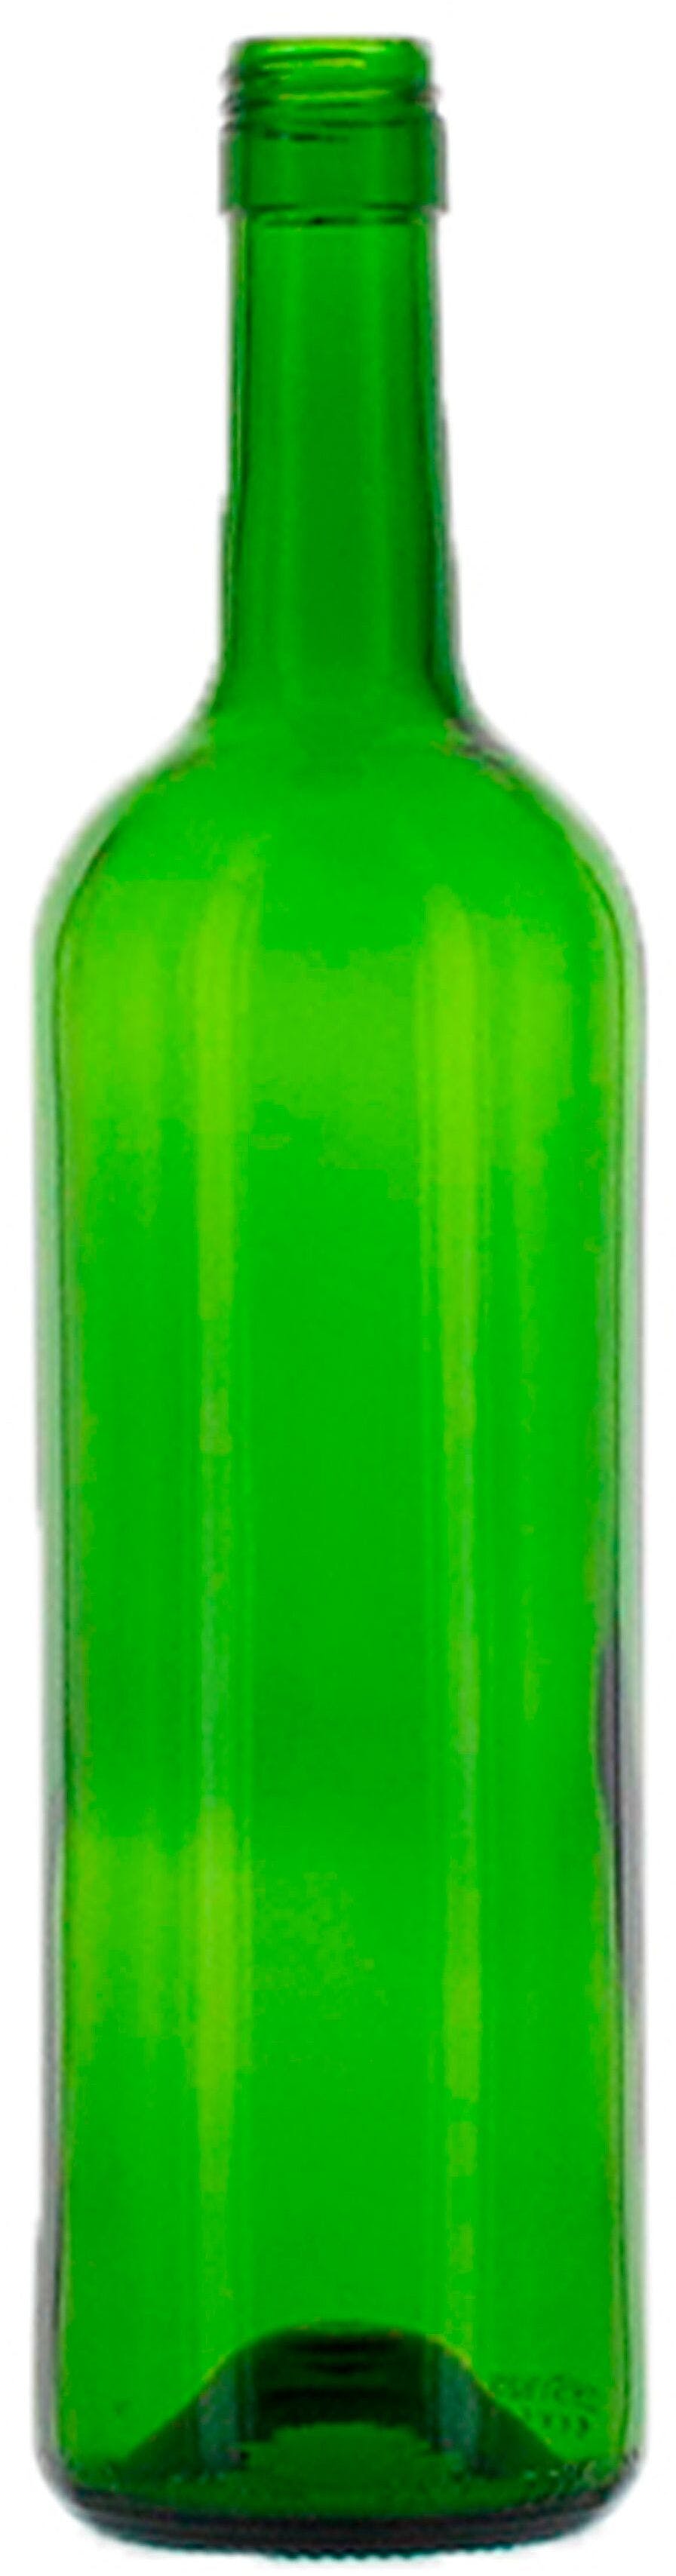 Garrafa Bordéus   MED 750 ml BG-Rosca